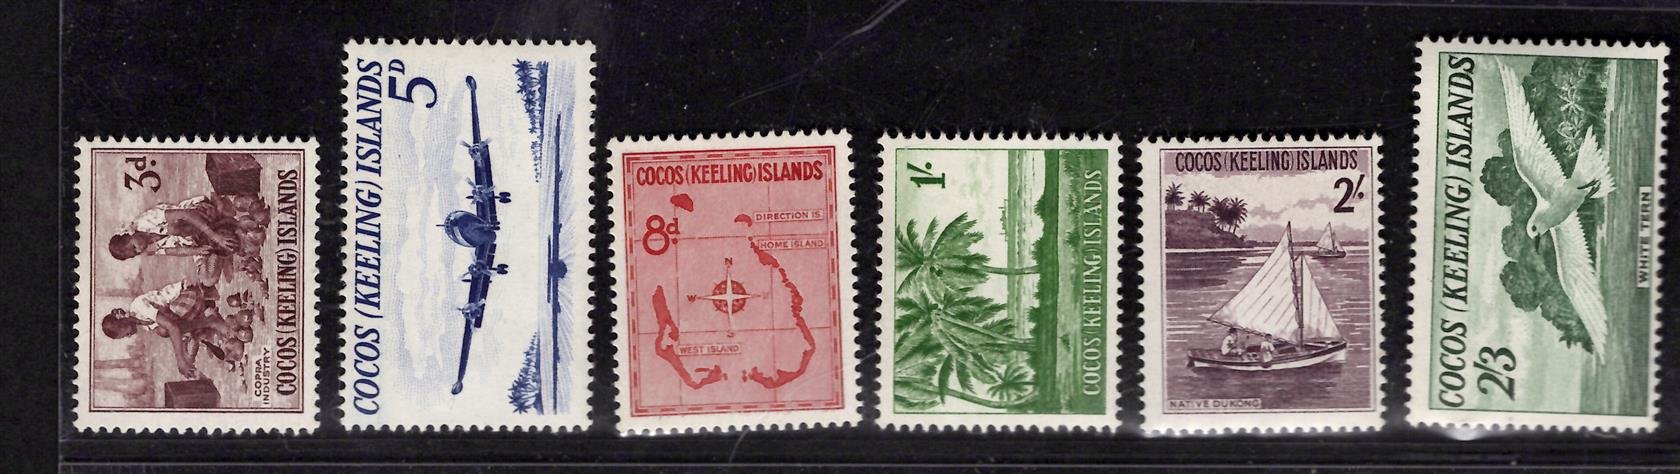 Cocos Islands - SG 1 - 6, výplatní, kompletní řada